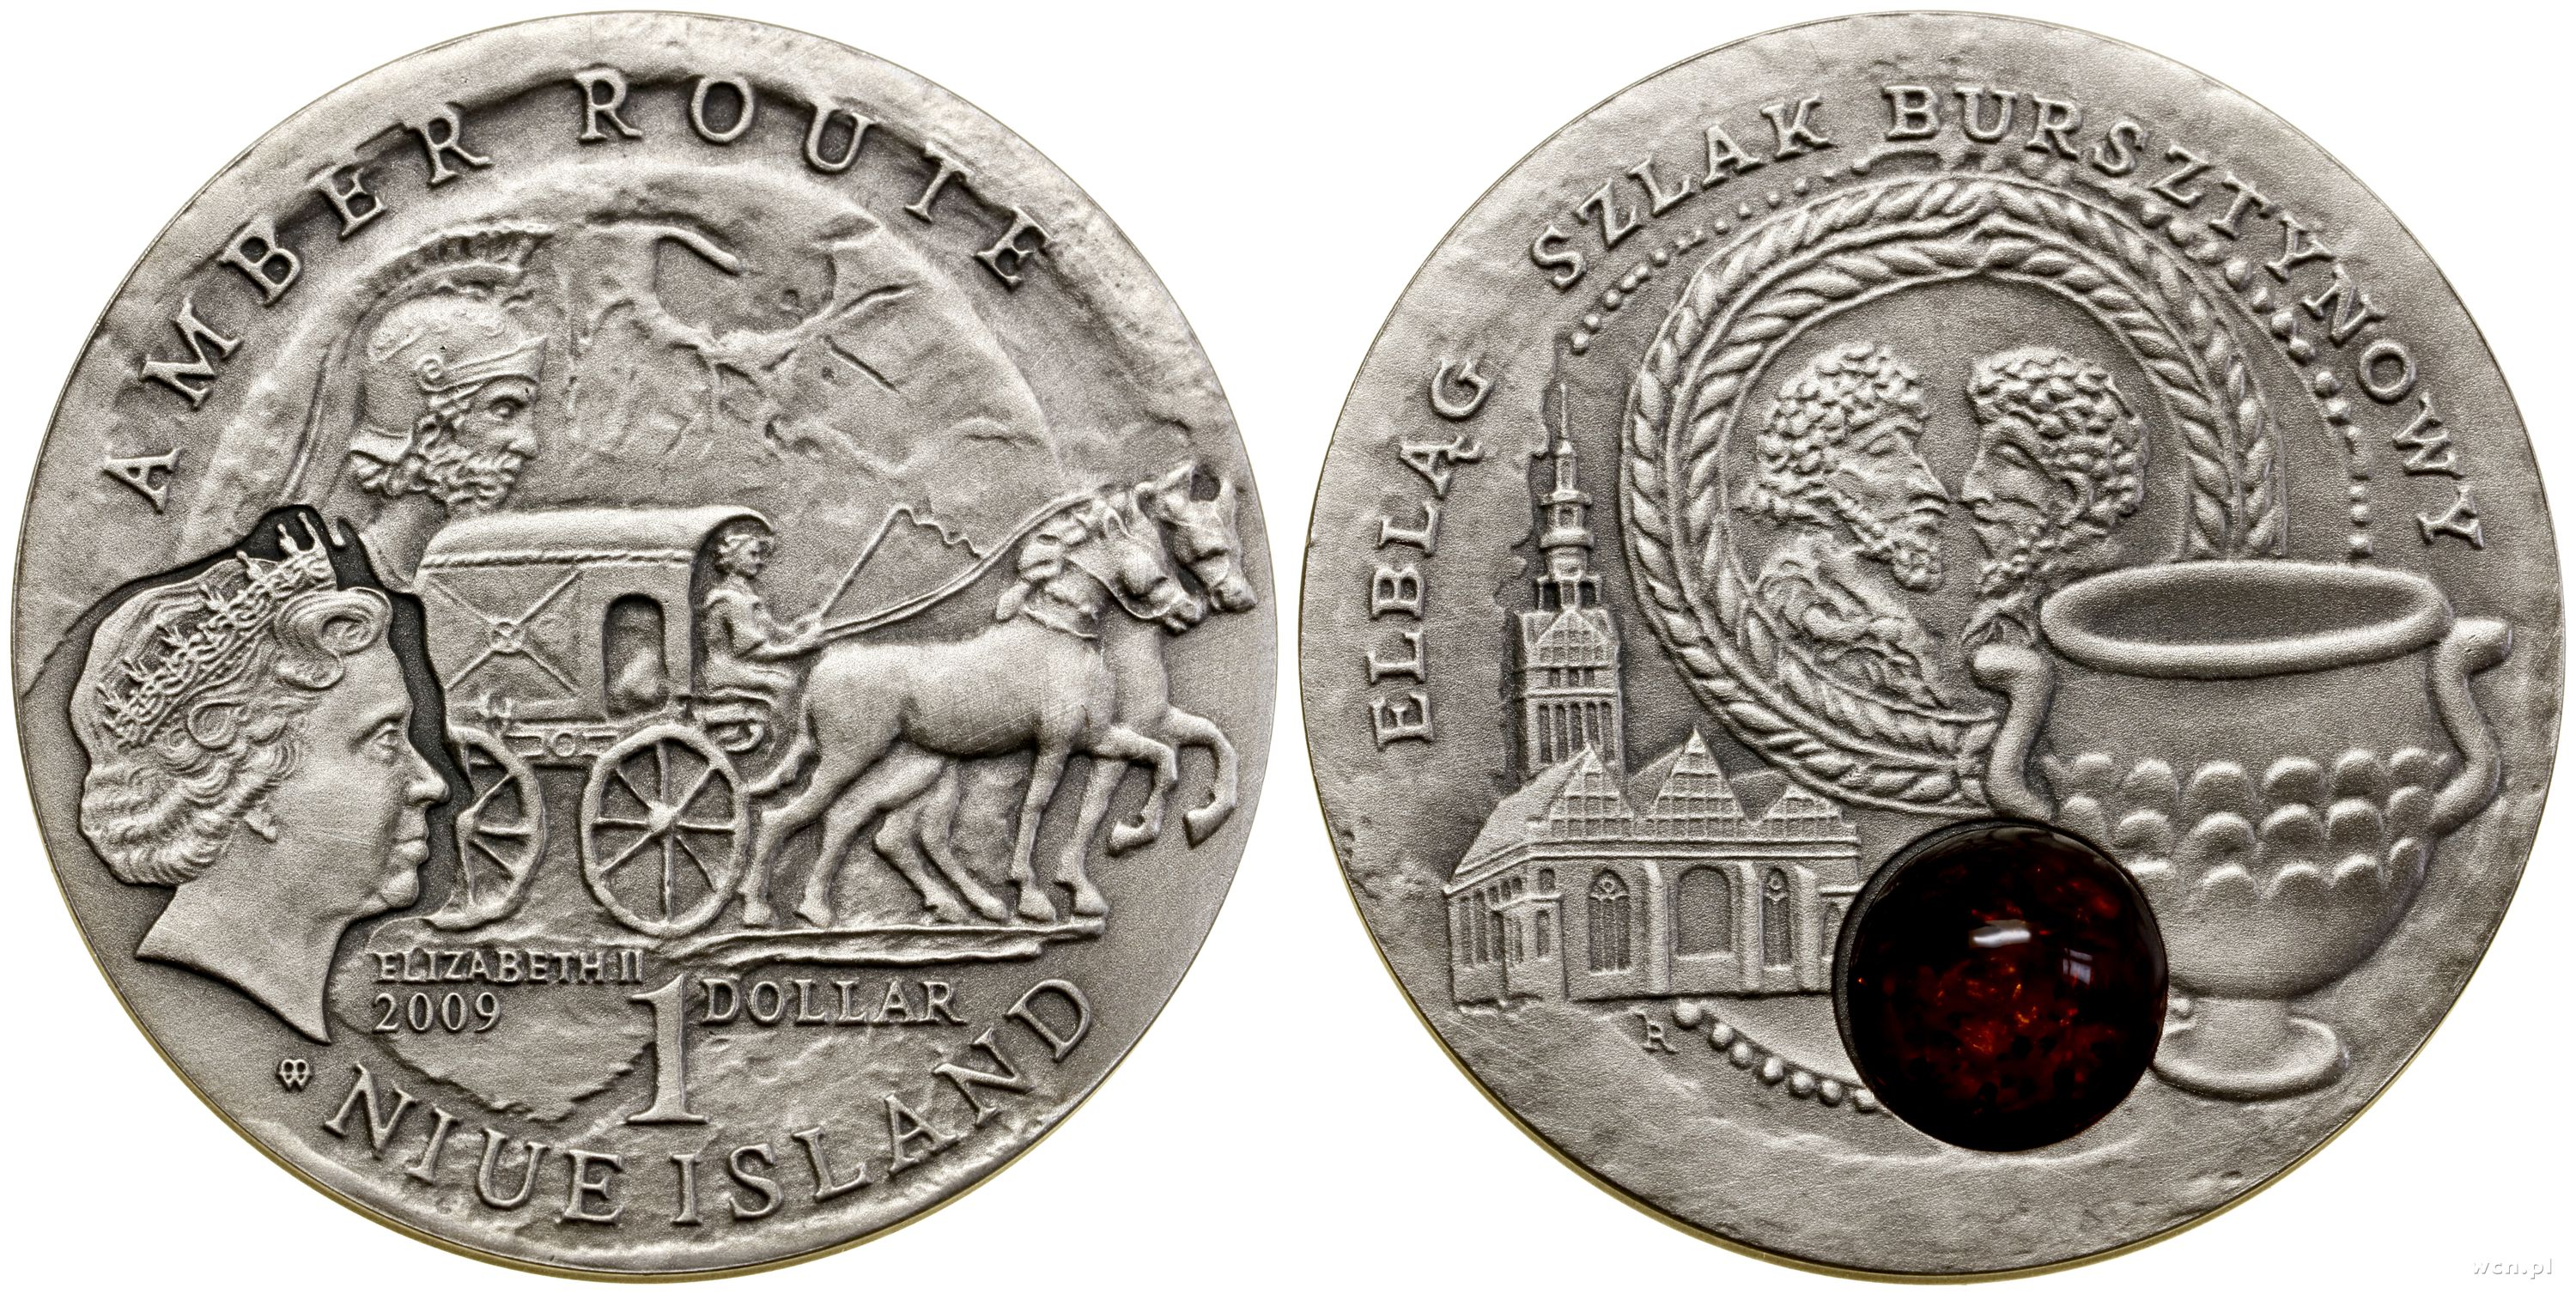 1 dolar 2009, Warszawa, Szlak bursztynowy – Elbl